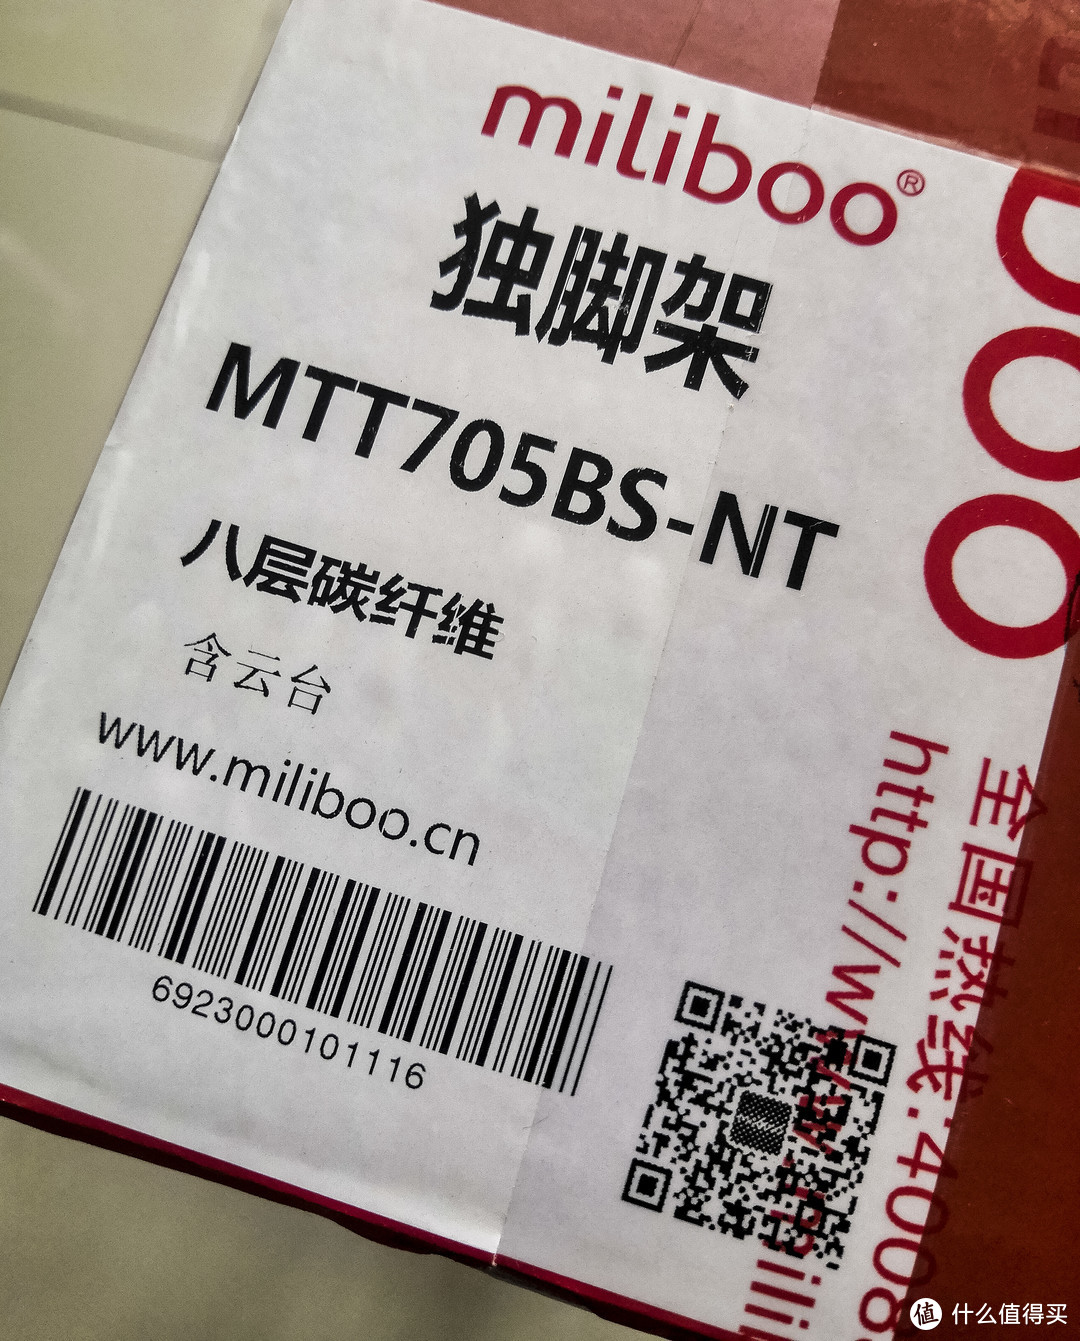 稳走天涯--Miliboo MTT705BS-NT（碳纤维）独脚架评测